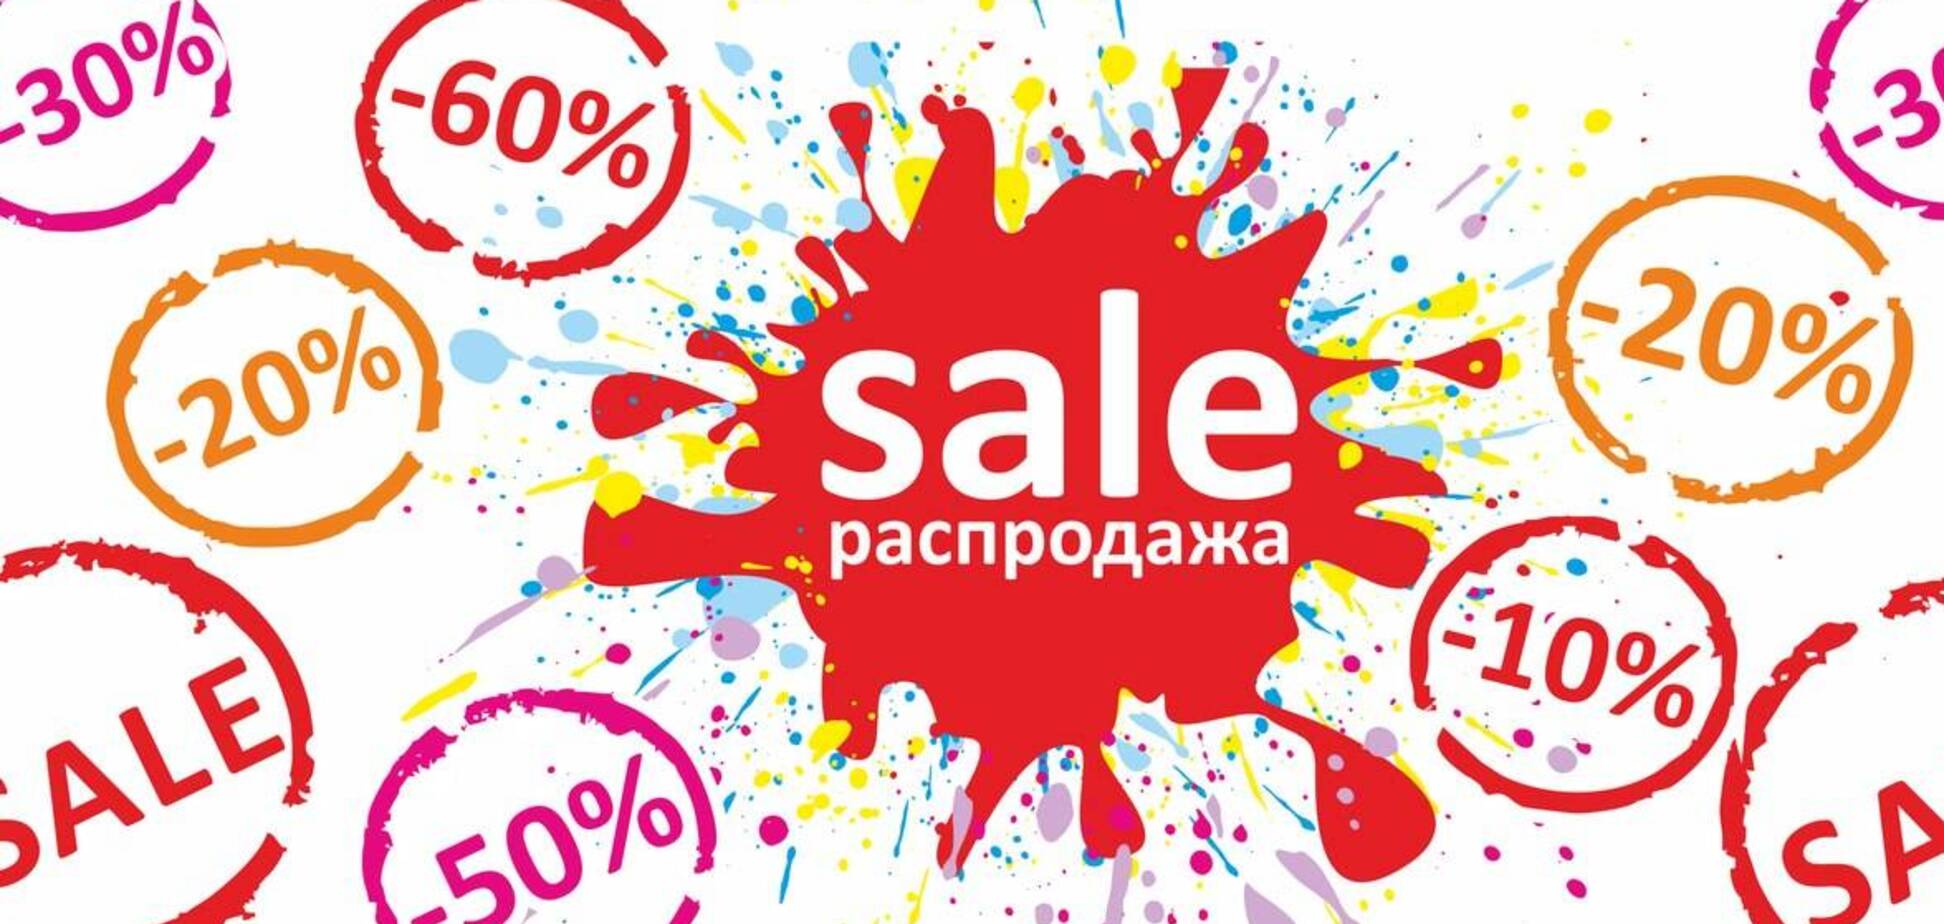 Распродажи до 50-70% в разделе Промокоды (фото: декорал)